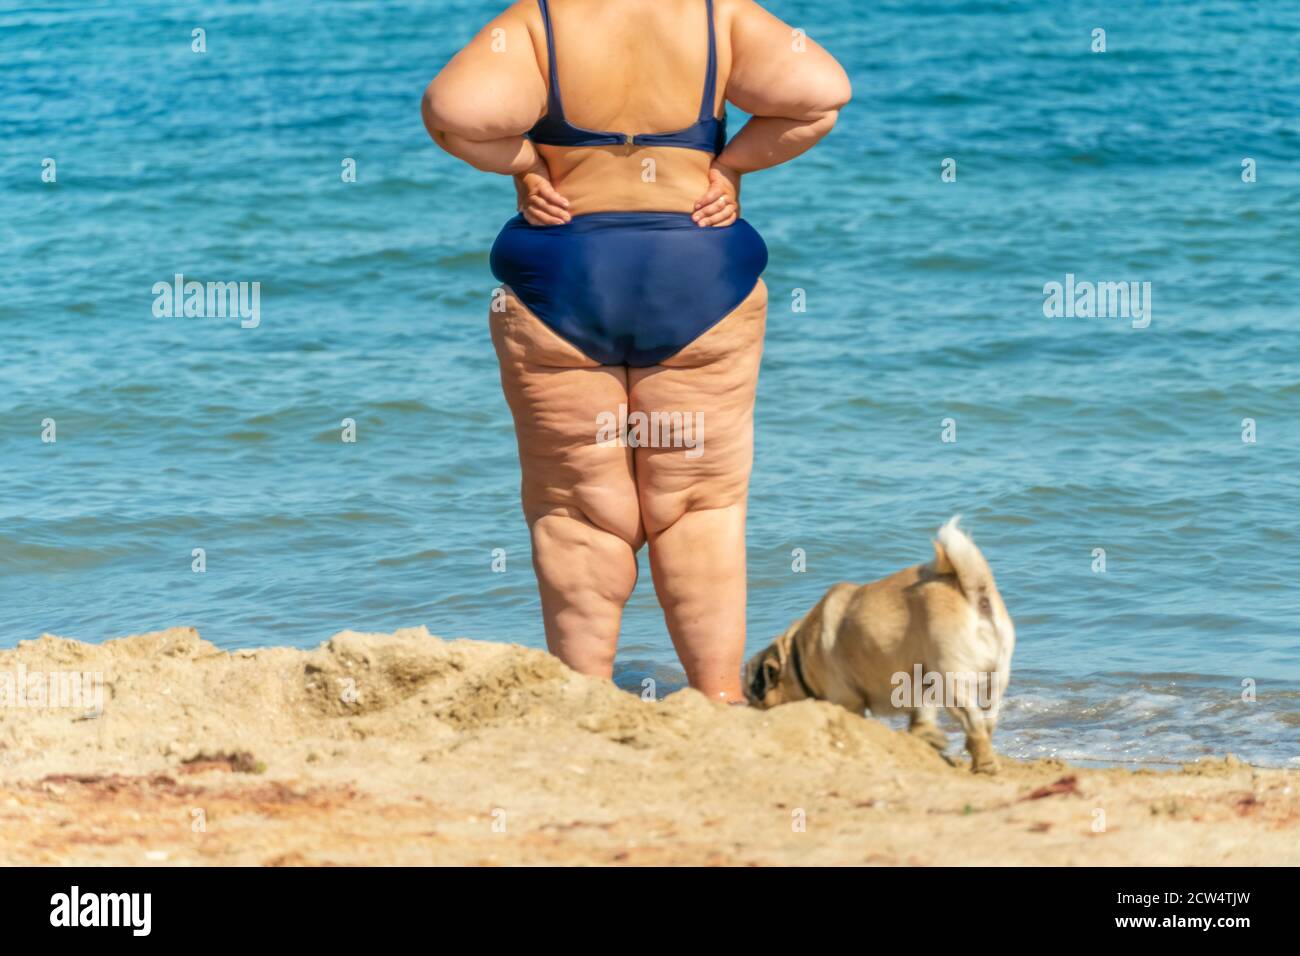 Eine dicke Frau im Badeanzug steht mit einem Hundeschwein am Strand und  blickt in die Ferne des Meeres. Nicht erkennbare Person. Foto von hinten  Stockfotografie - Alamy